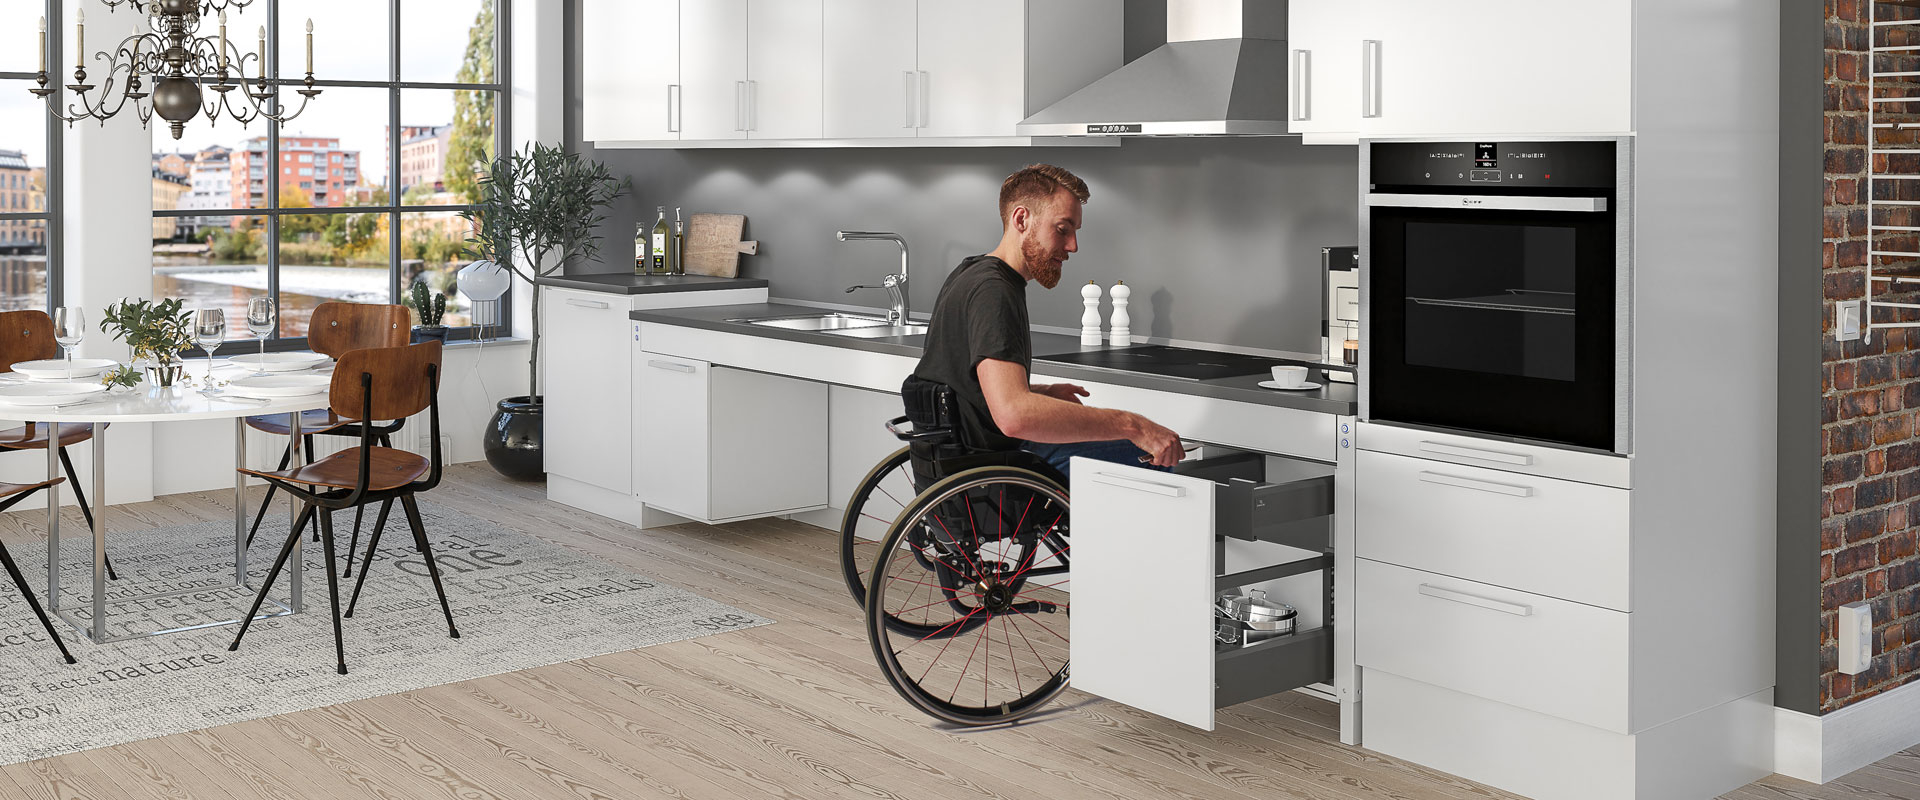 Tips för planering av rullstolsanpassat kök